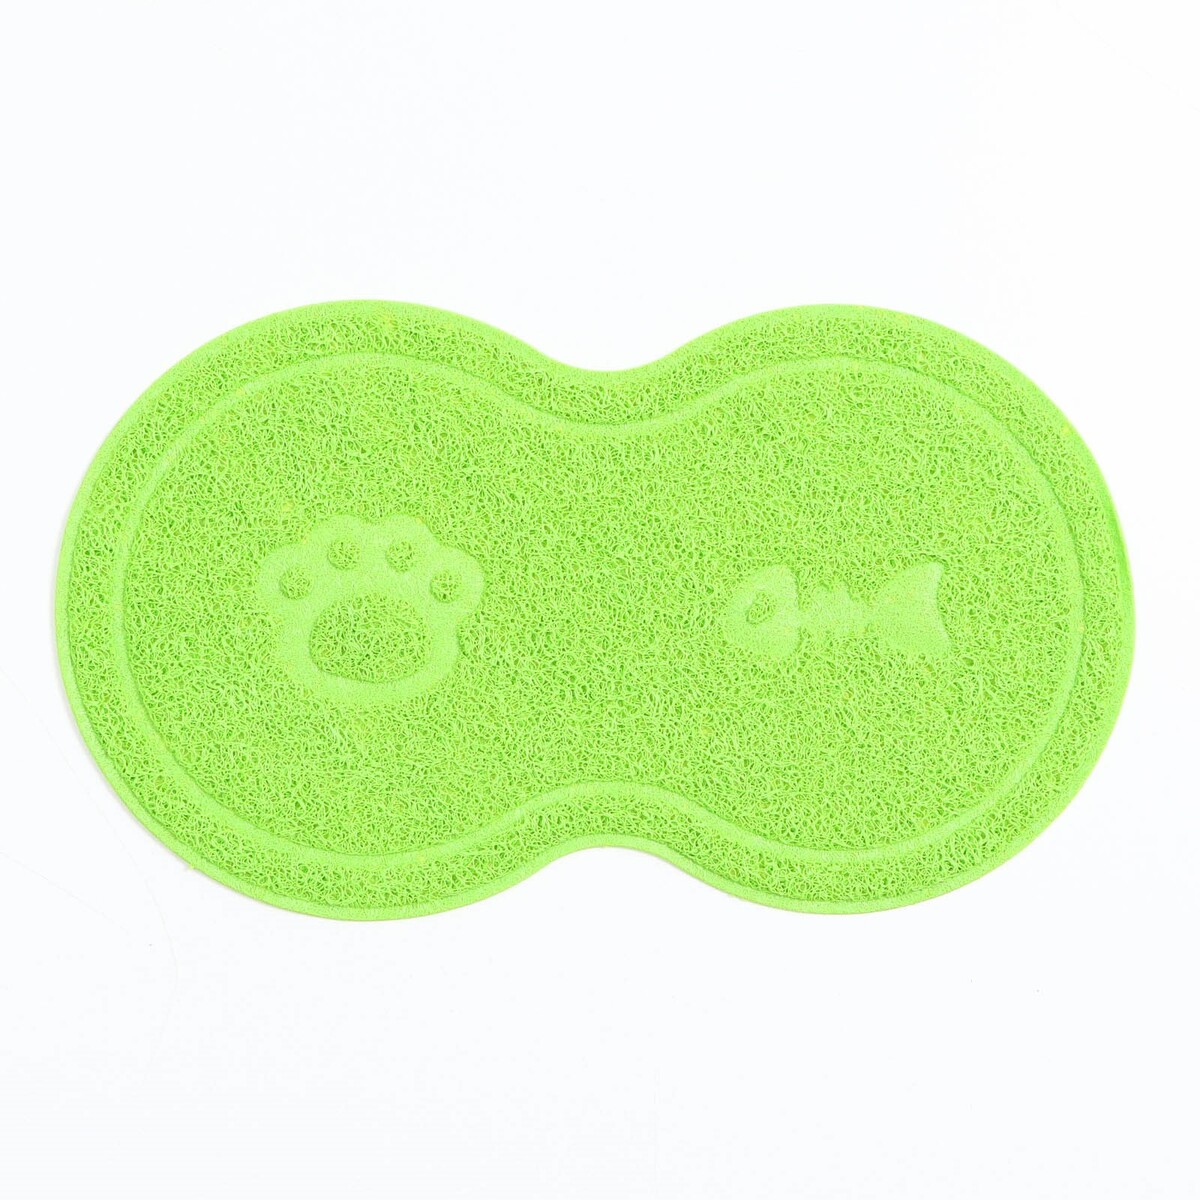 Коврик 2-в-1 под миску/туалет для животных два круга, 47 х 26 см, зеленый коврик для йоги airex yoga eco pro mat yogaecopmgn зеленый